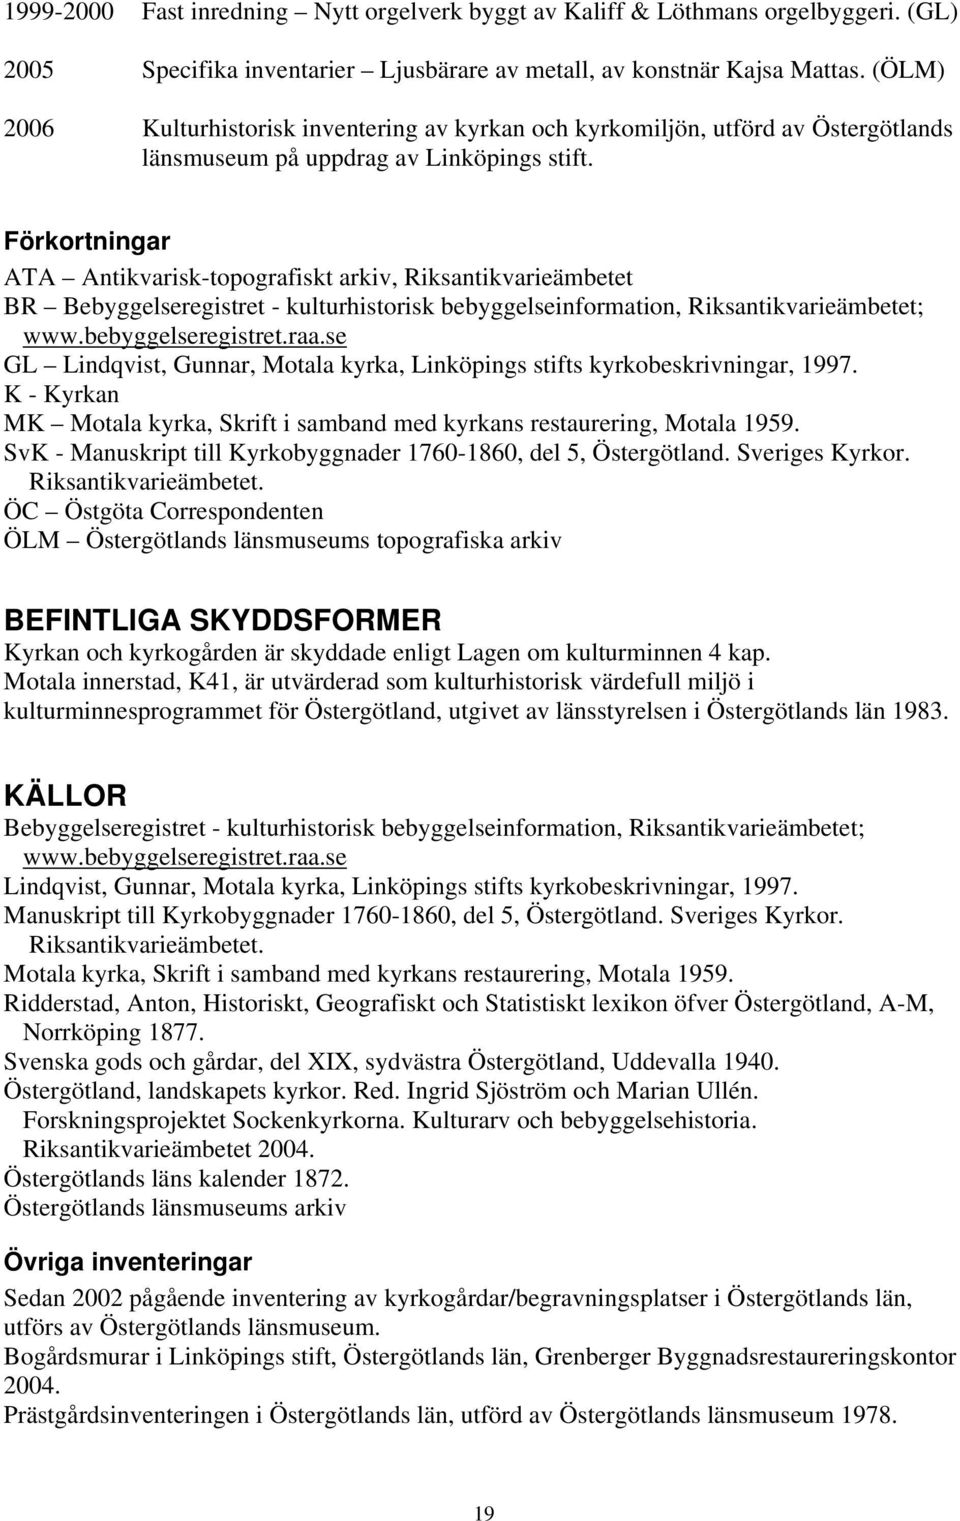 Förkortningar ATA Antikvarisk-topografiskt arkiv, Riksantikvarieämbetet BR Bebyggelseregistret - kulturhistorisk bebyggelseinformation, Riksantikvarieämbetet; www.bebyggelseregistret.raa.